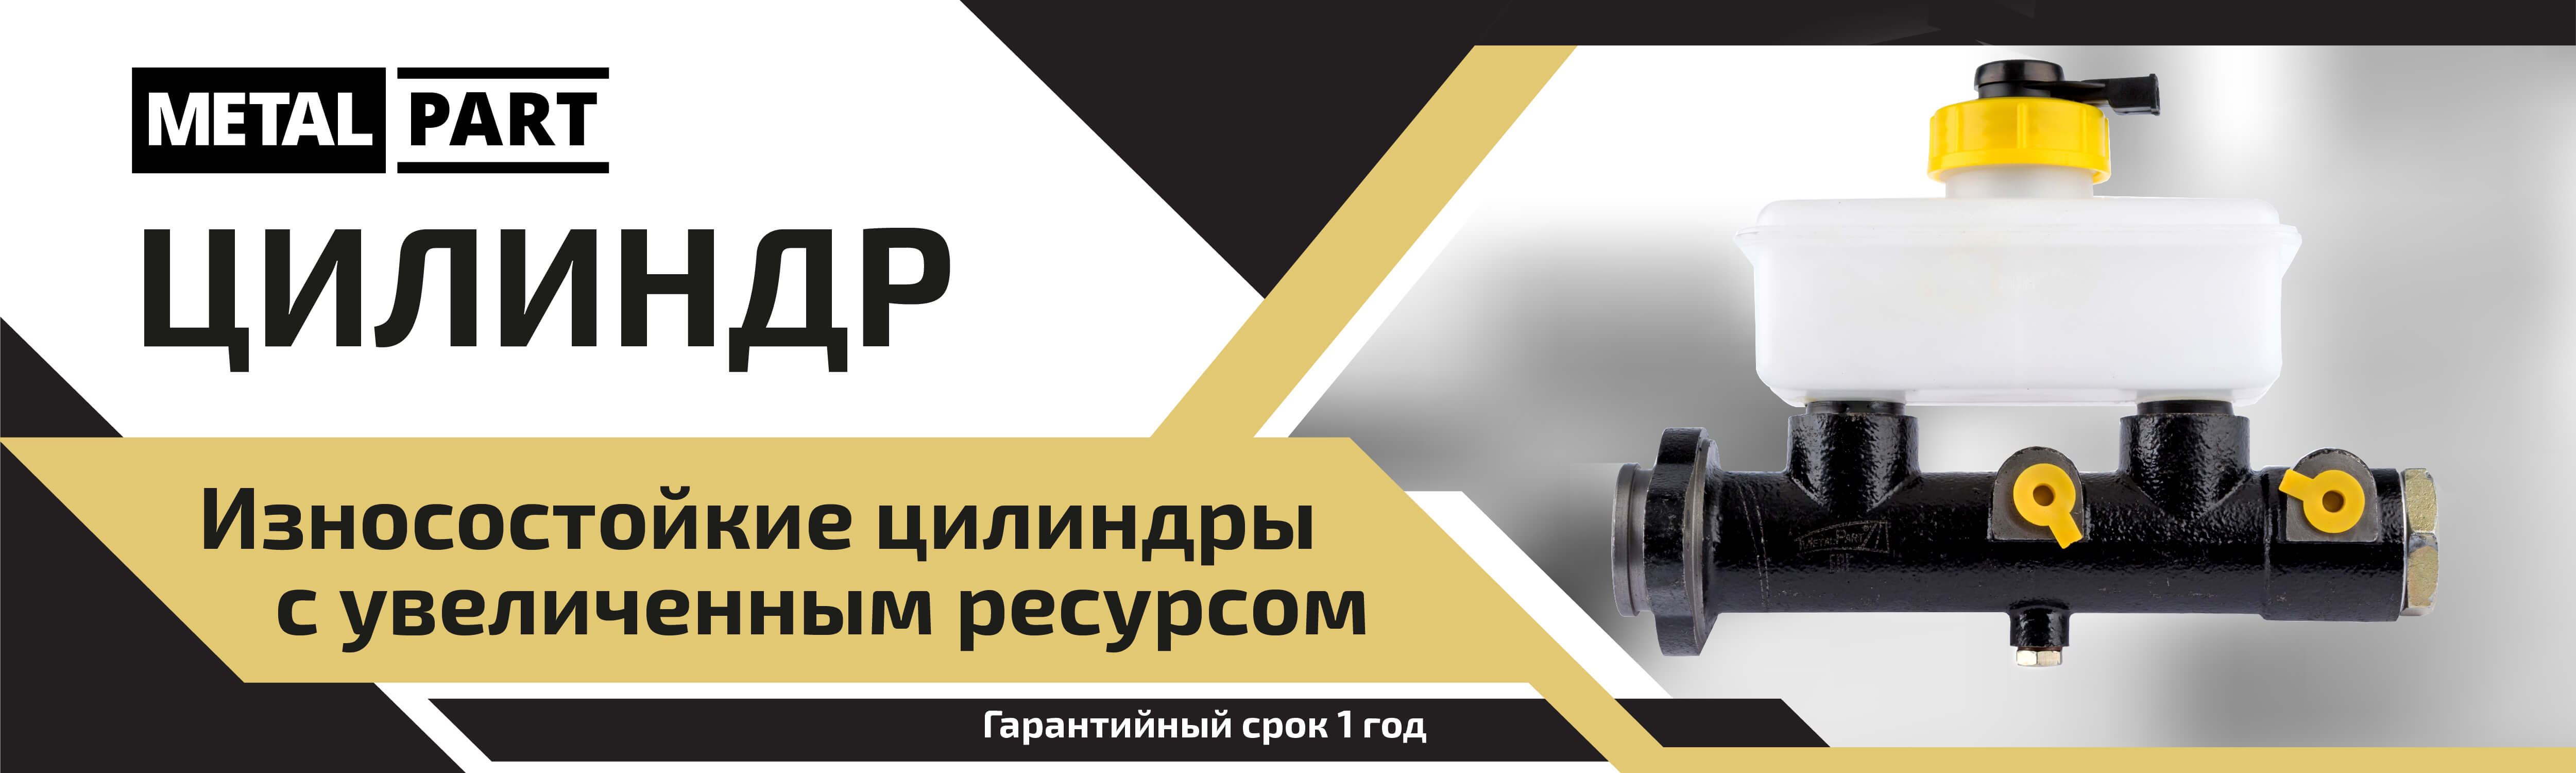 Цилиндры выключения сцепления — Купить для ГАЗ и УАЗ, цены в Metalpart.ru